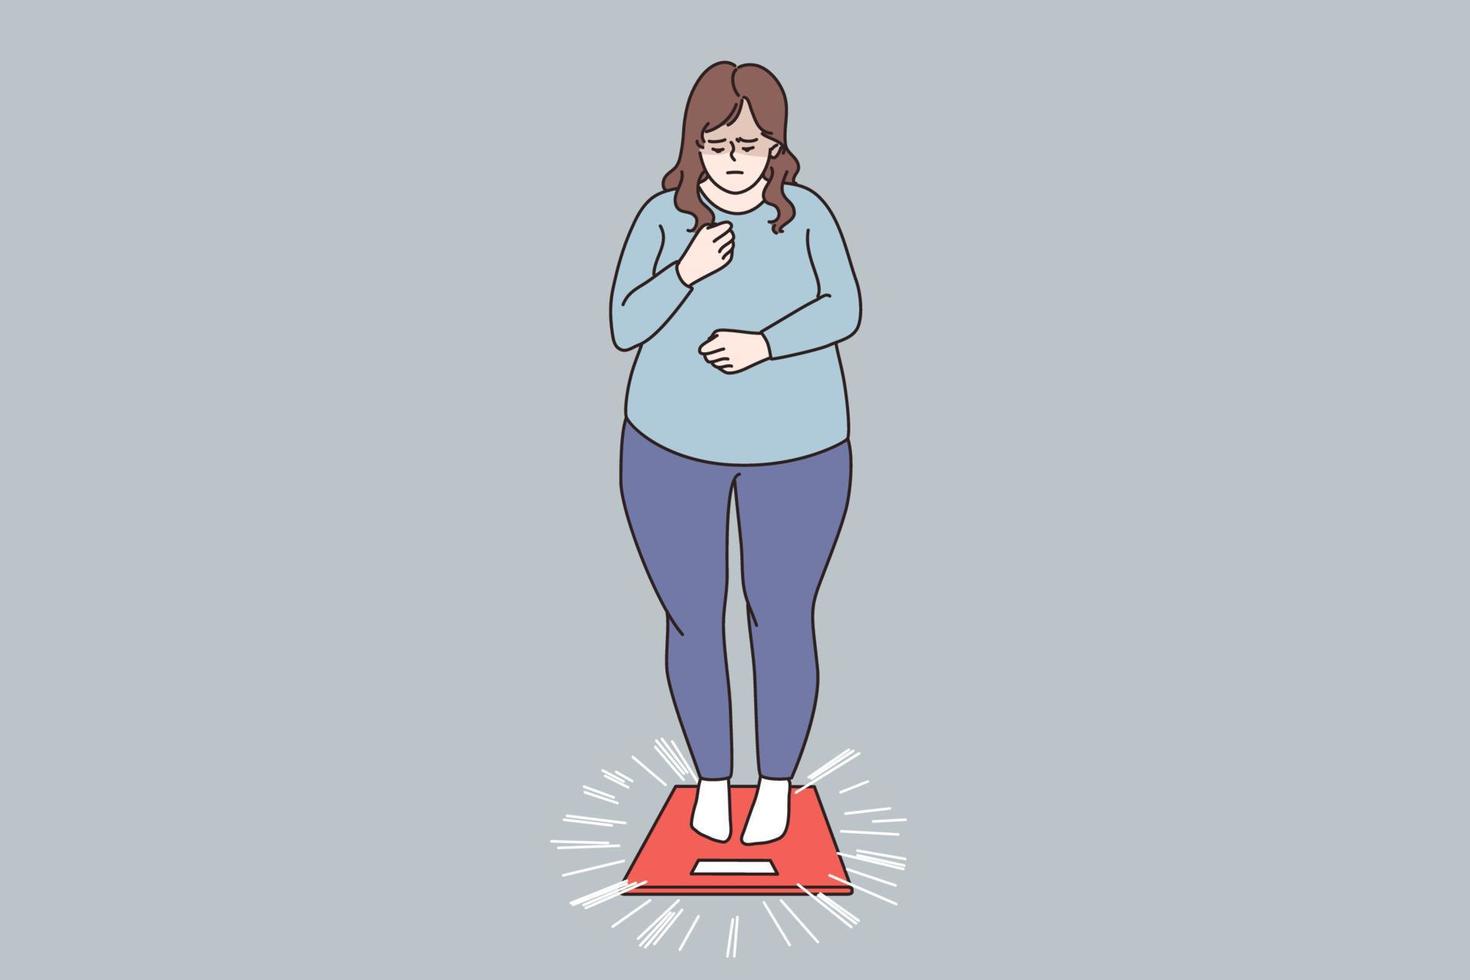 konzept für übergewichtige und fettleibige menschen. fettleibige traurige frau, die auf waagen steht und gewichtsprobleme hat, fühlt sich gestresst, vektorillustration vektor